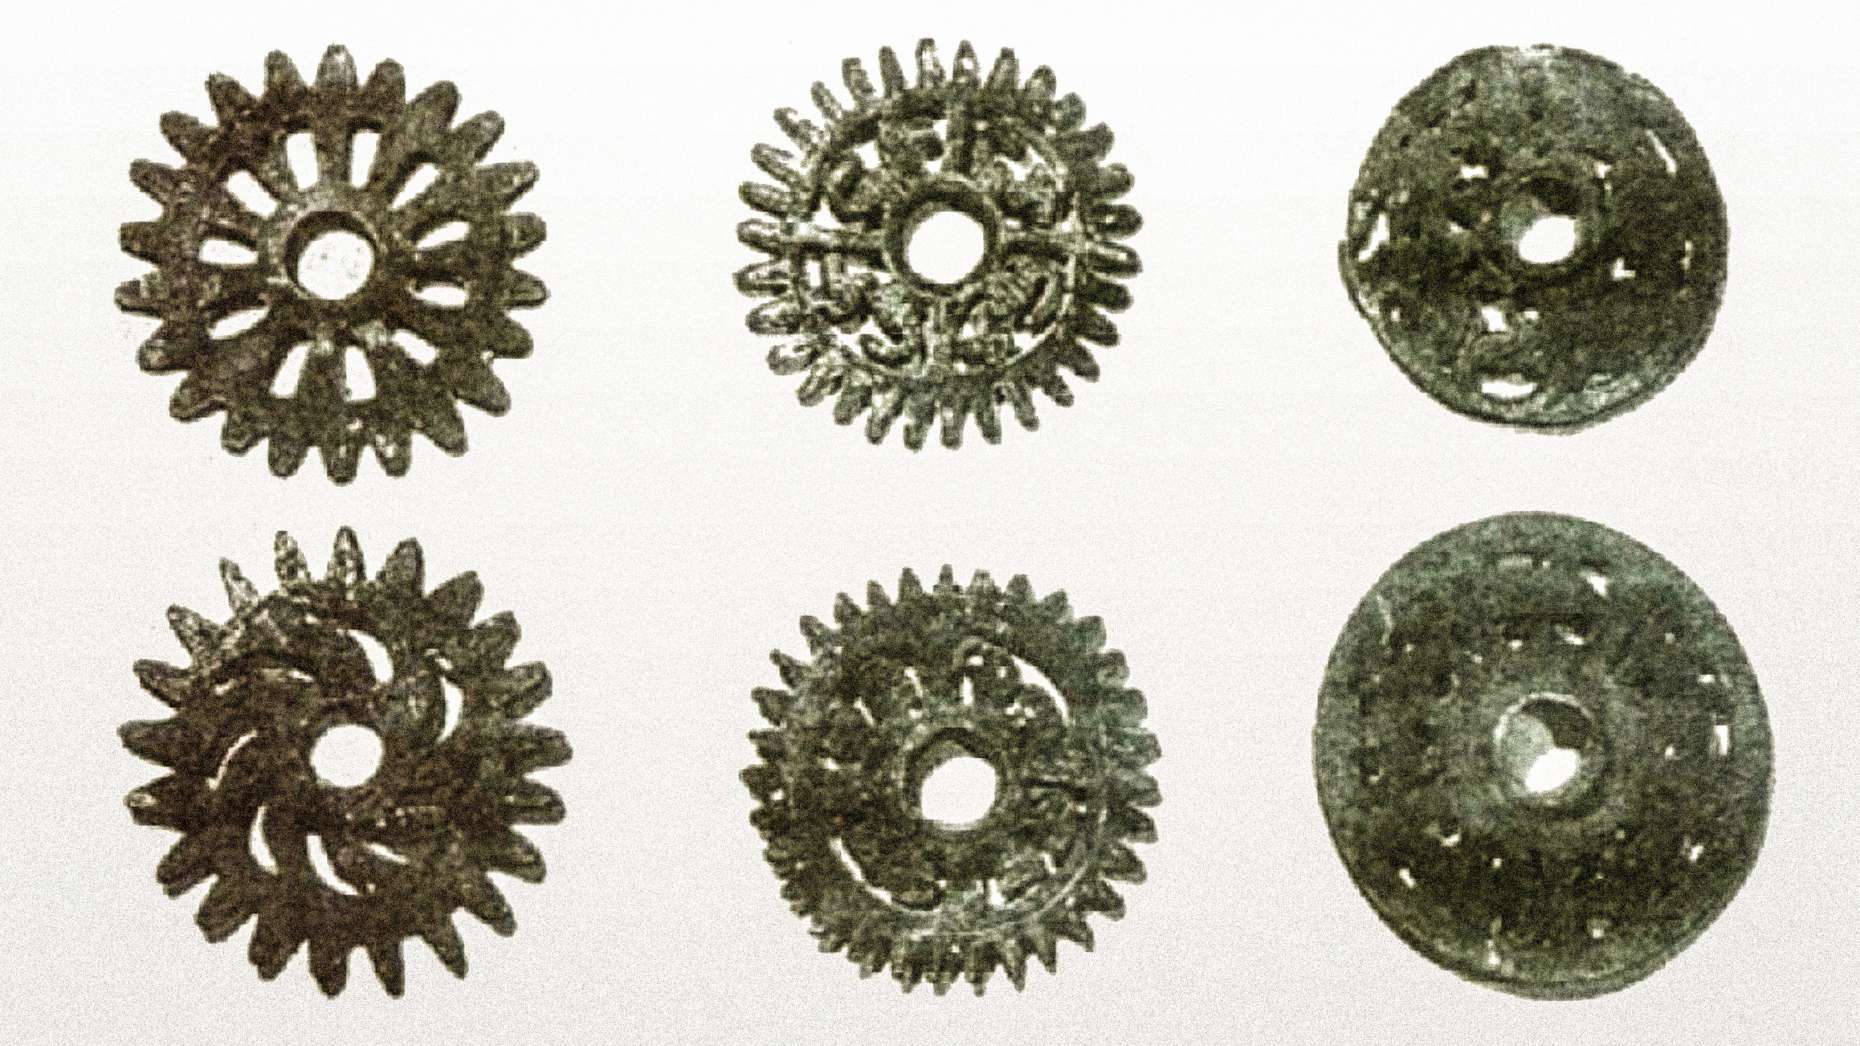 Kontroversiell prehistoresch Bronze Gears vu Peru: De legendäre 'Schlëssel' fir d'Länner vun de Gëtter? 2